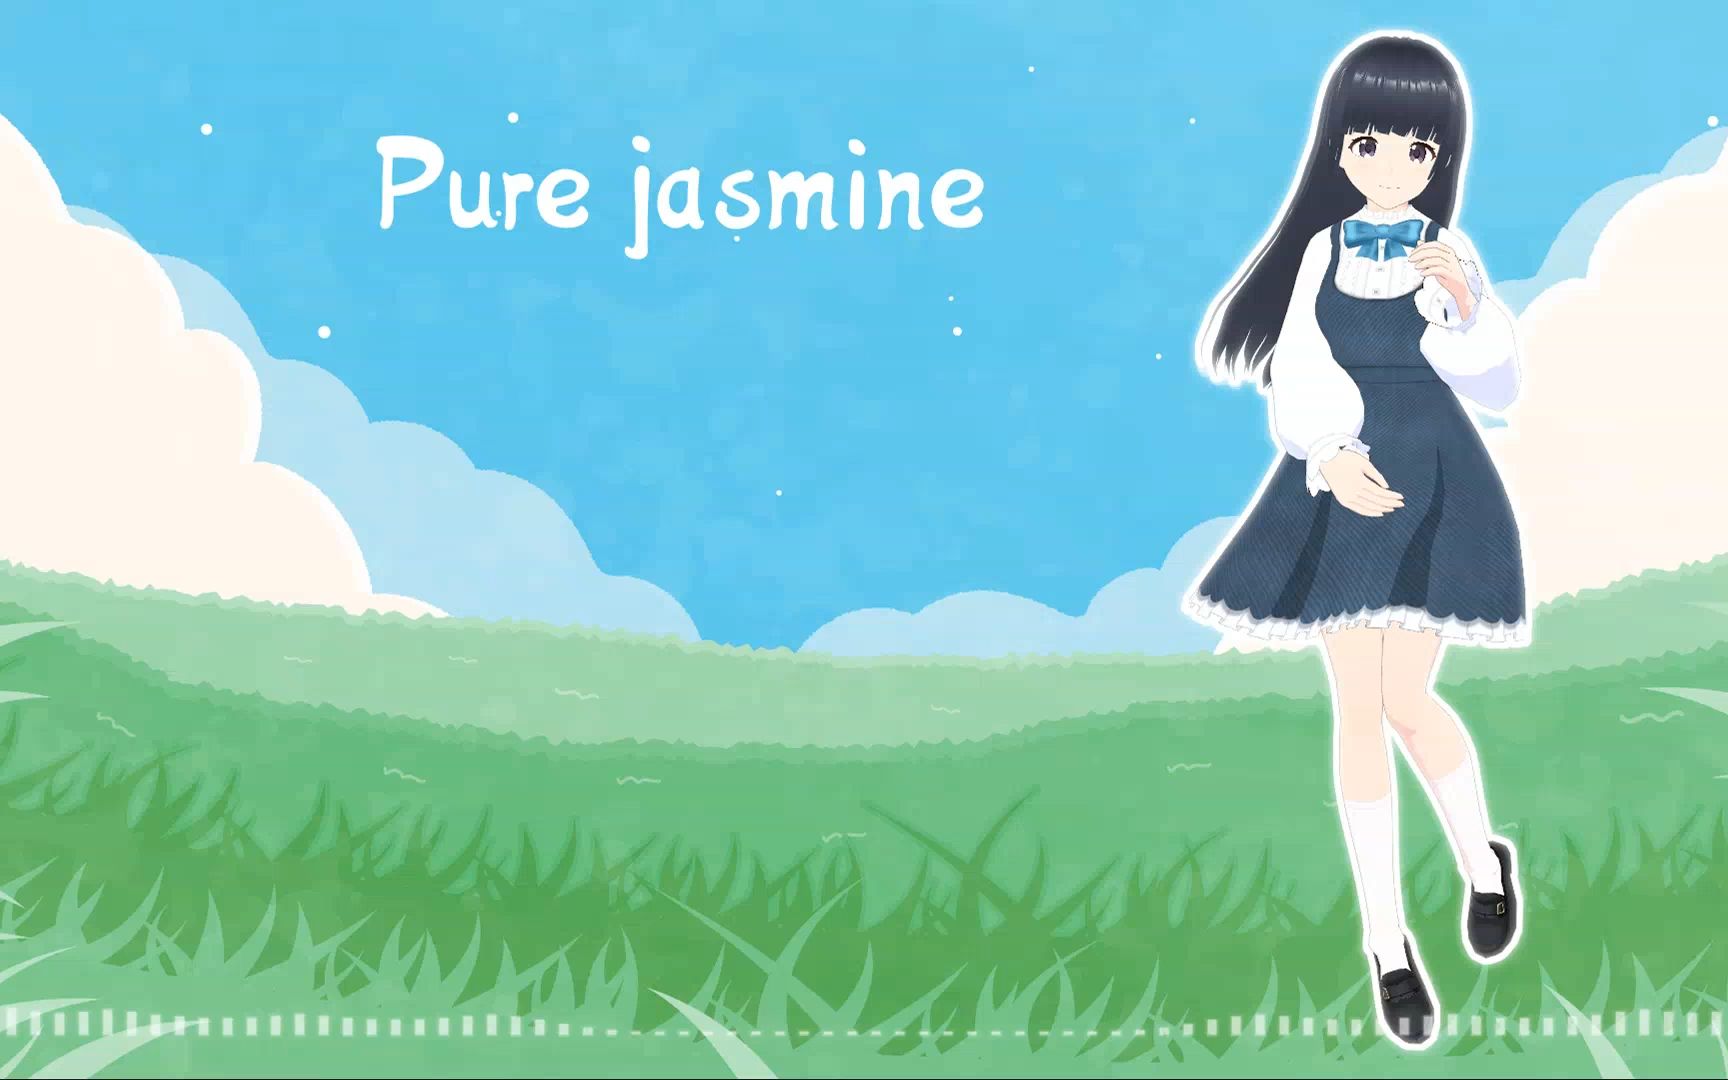 【原创BGM】Pure jasmine 【快速波萨诺瓦·茉莉角色曲】